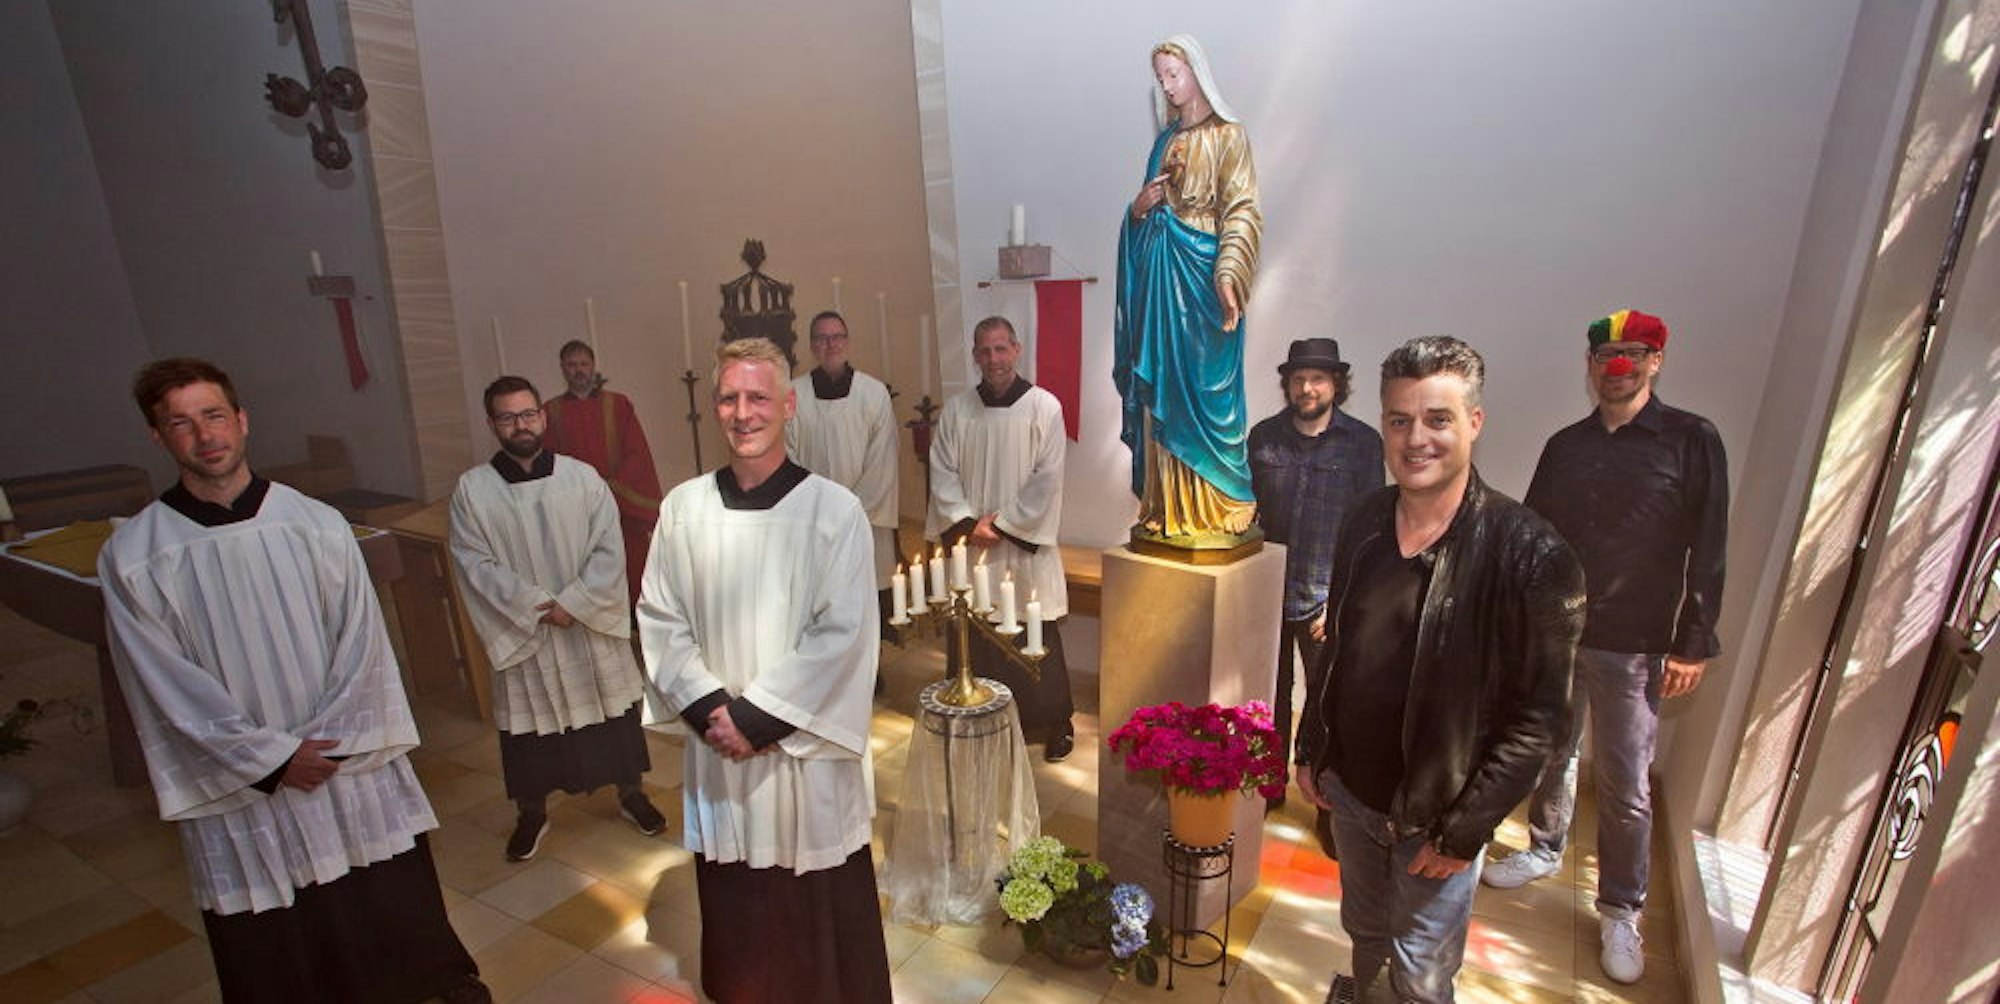 Die Engelskirchener Band The Höösch hat das Video für ihr neues Lied „Dä leeve Jott“ mit einigen Gästen in der katholischen Kirche von Loope gedreht. In Szene gesetzt hat es der Höösch-Schlagzeuger und gelernte Mediengestalter Stefan Frösler.